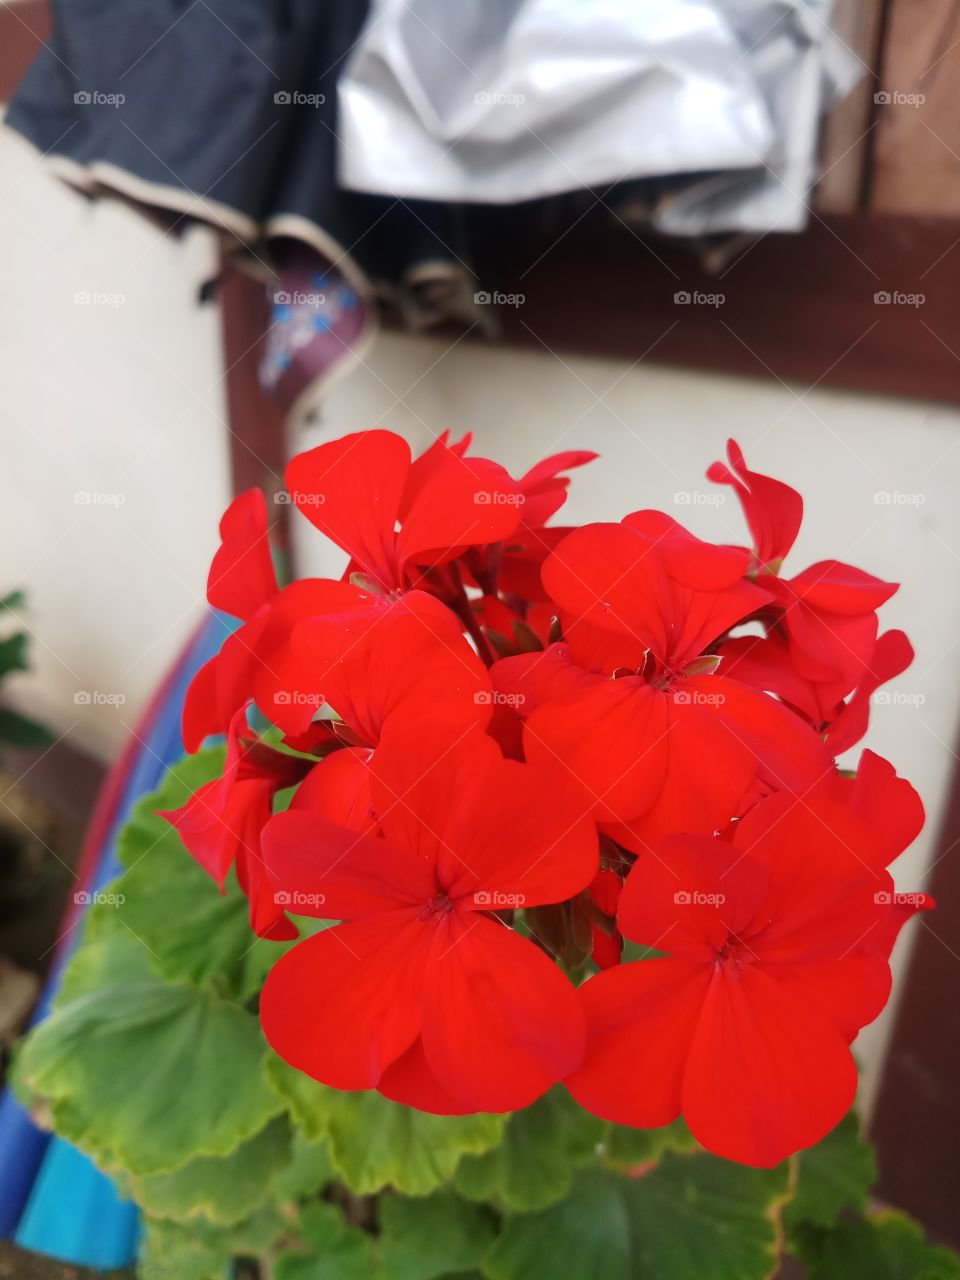 flower found in Bhutan